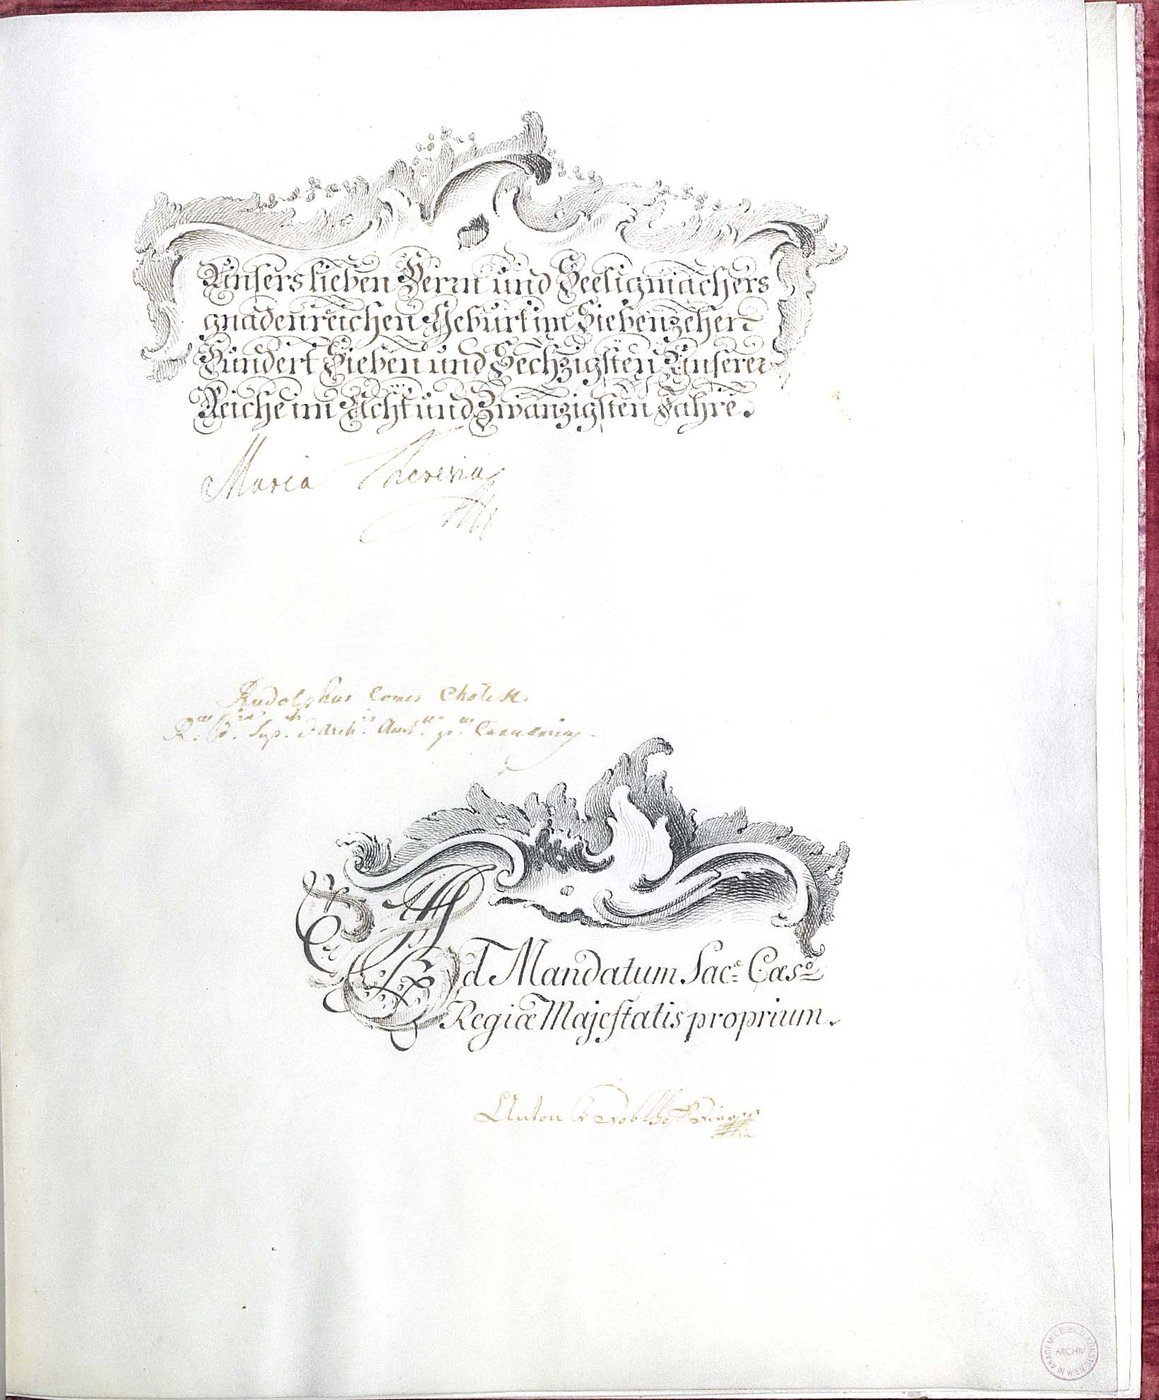 Letzte Seite der Kupferstecherstatuten, Verzierungen, Unterschrift Maria Theresias